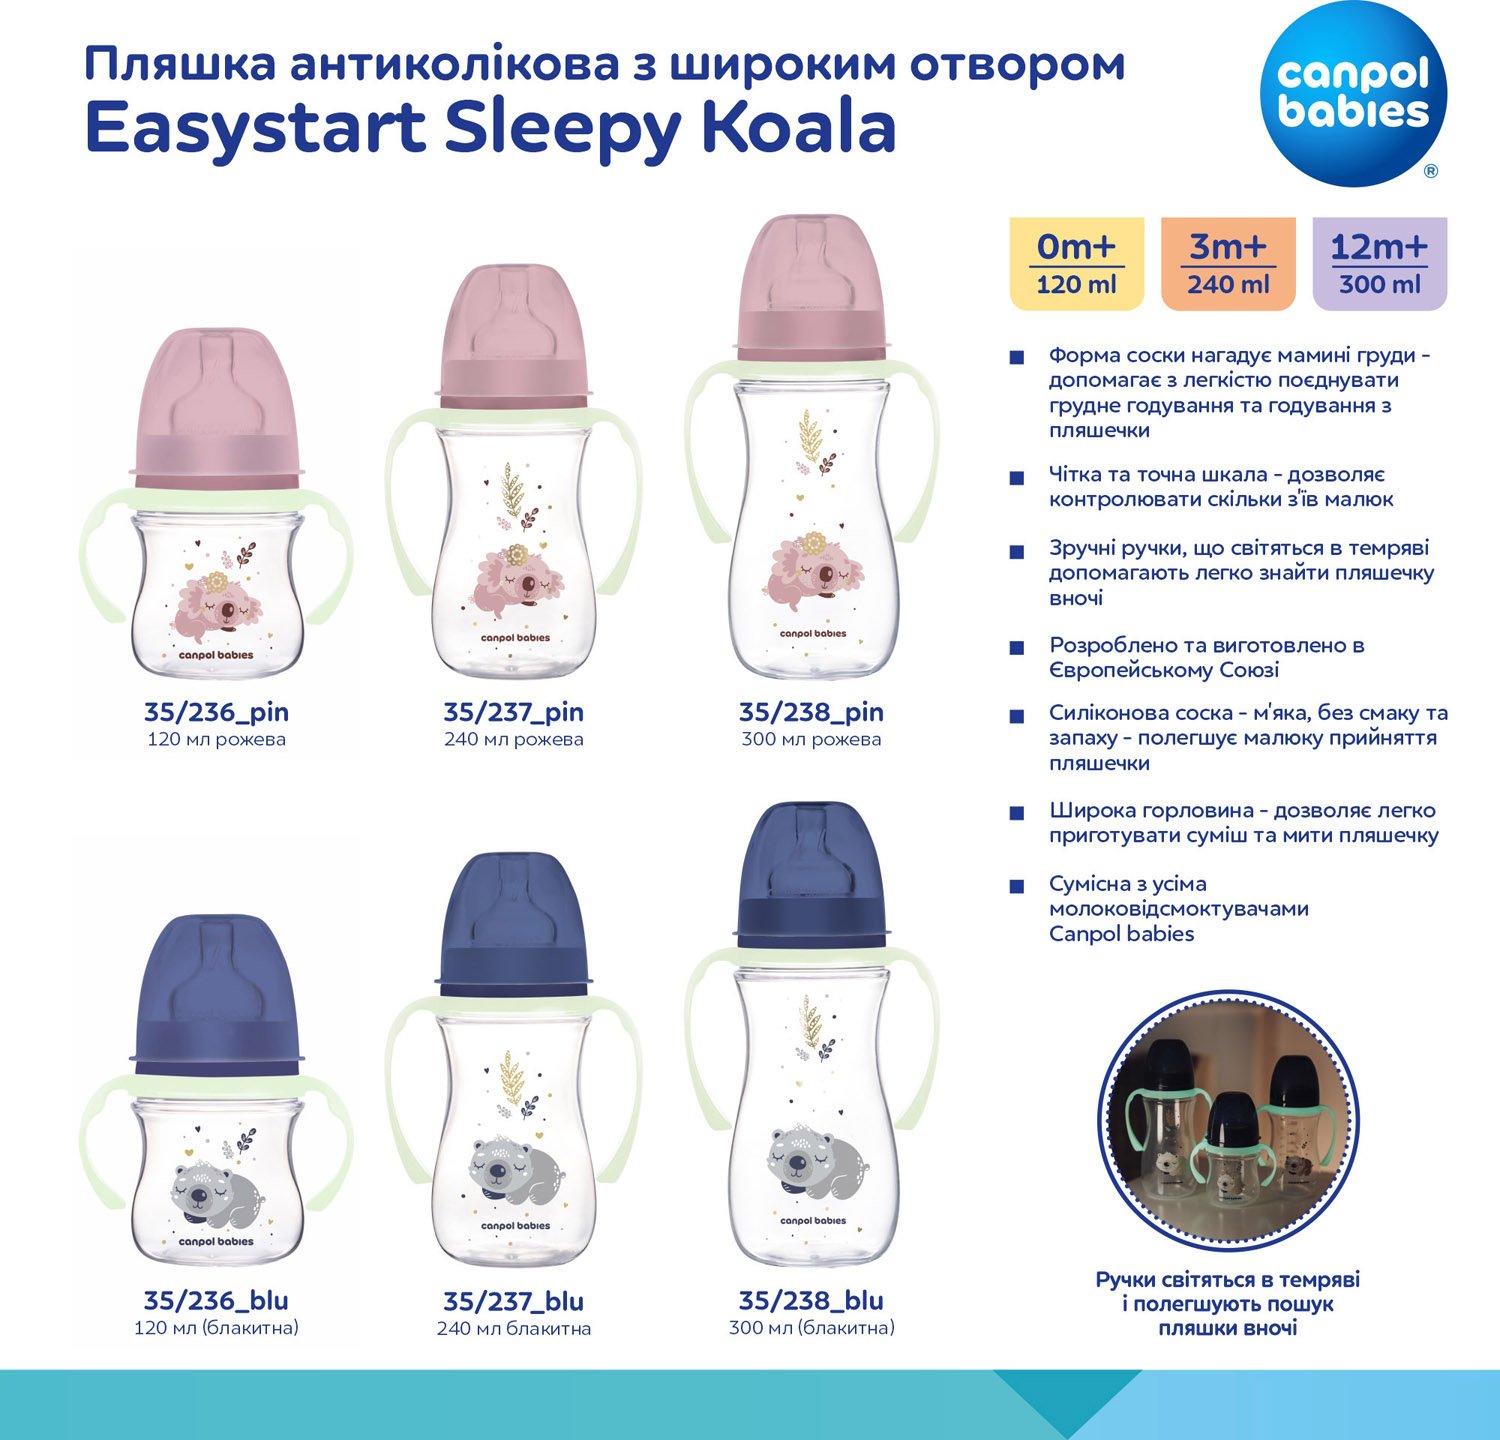 Пляшечка для годування Canpol babies Easystart Sleepy Koala, антиколікова, 120 мл, рожева (35/236_pin) - фото 11